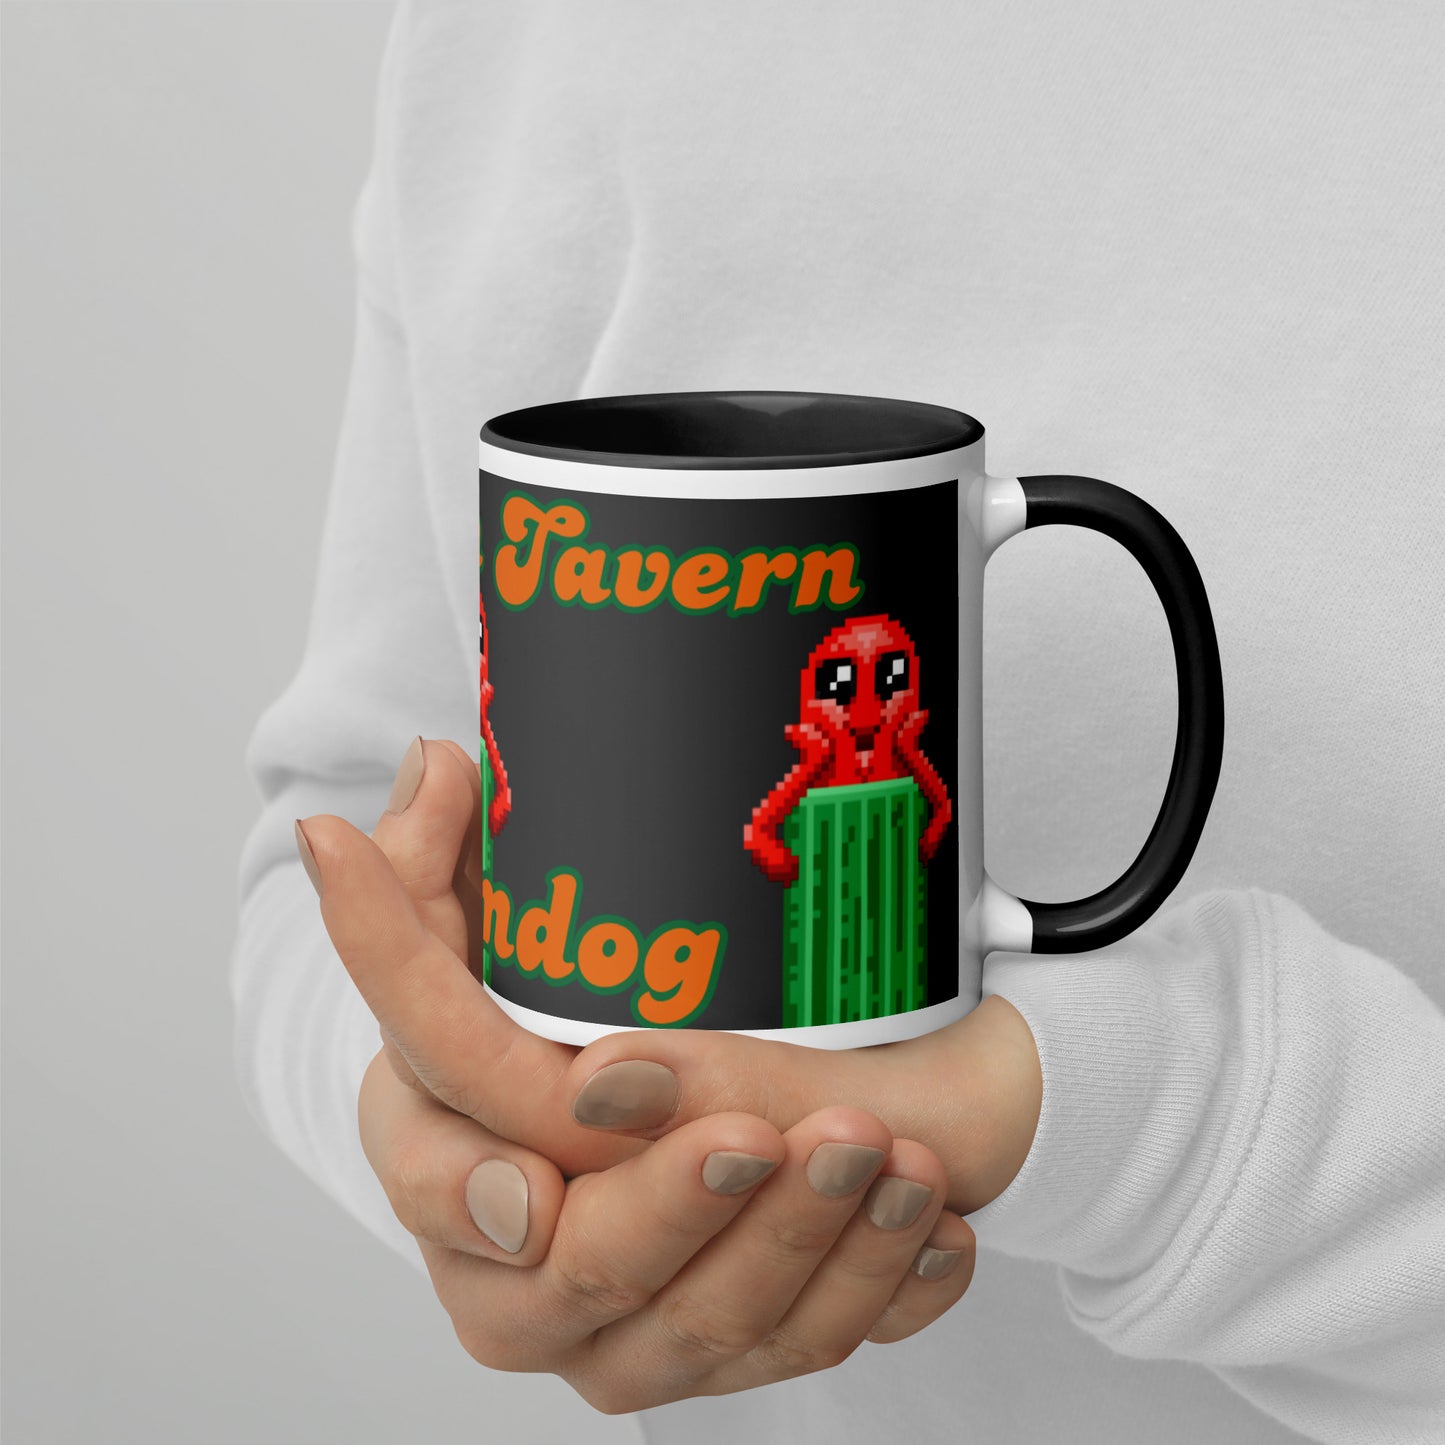 Cucumdog Mug with Color Inside